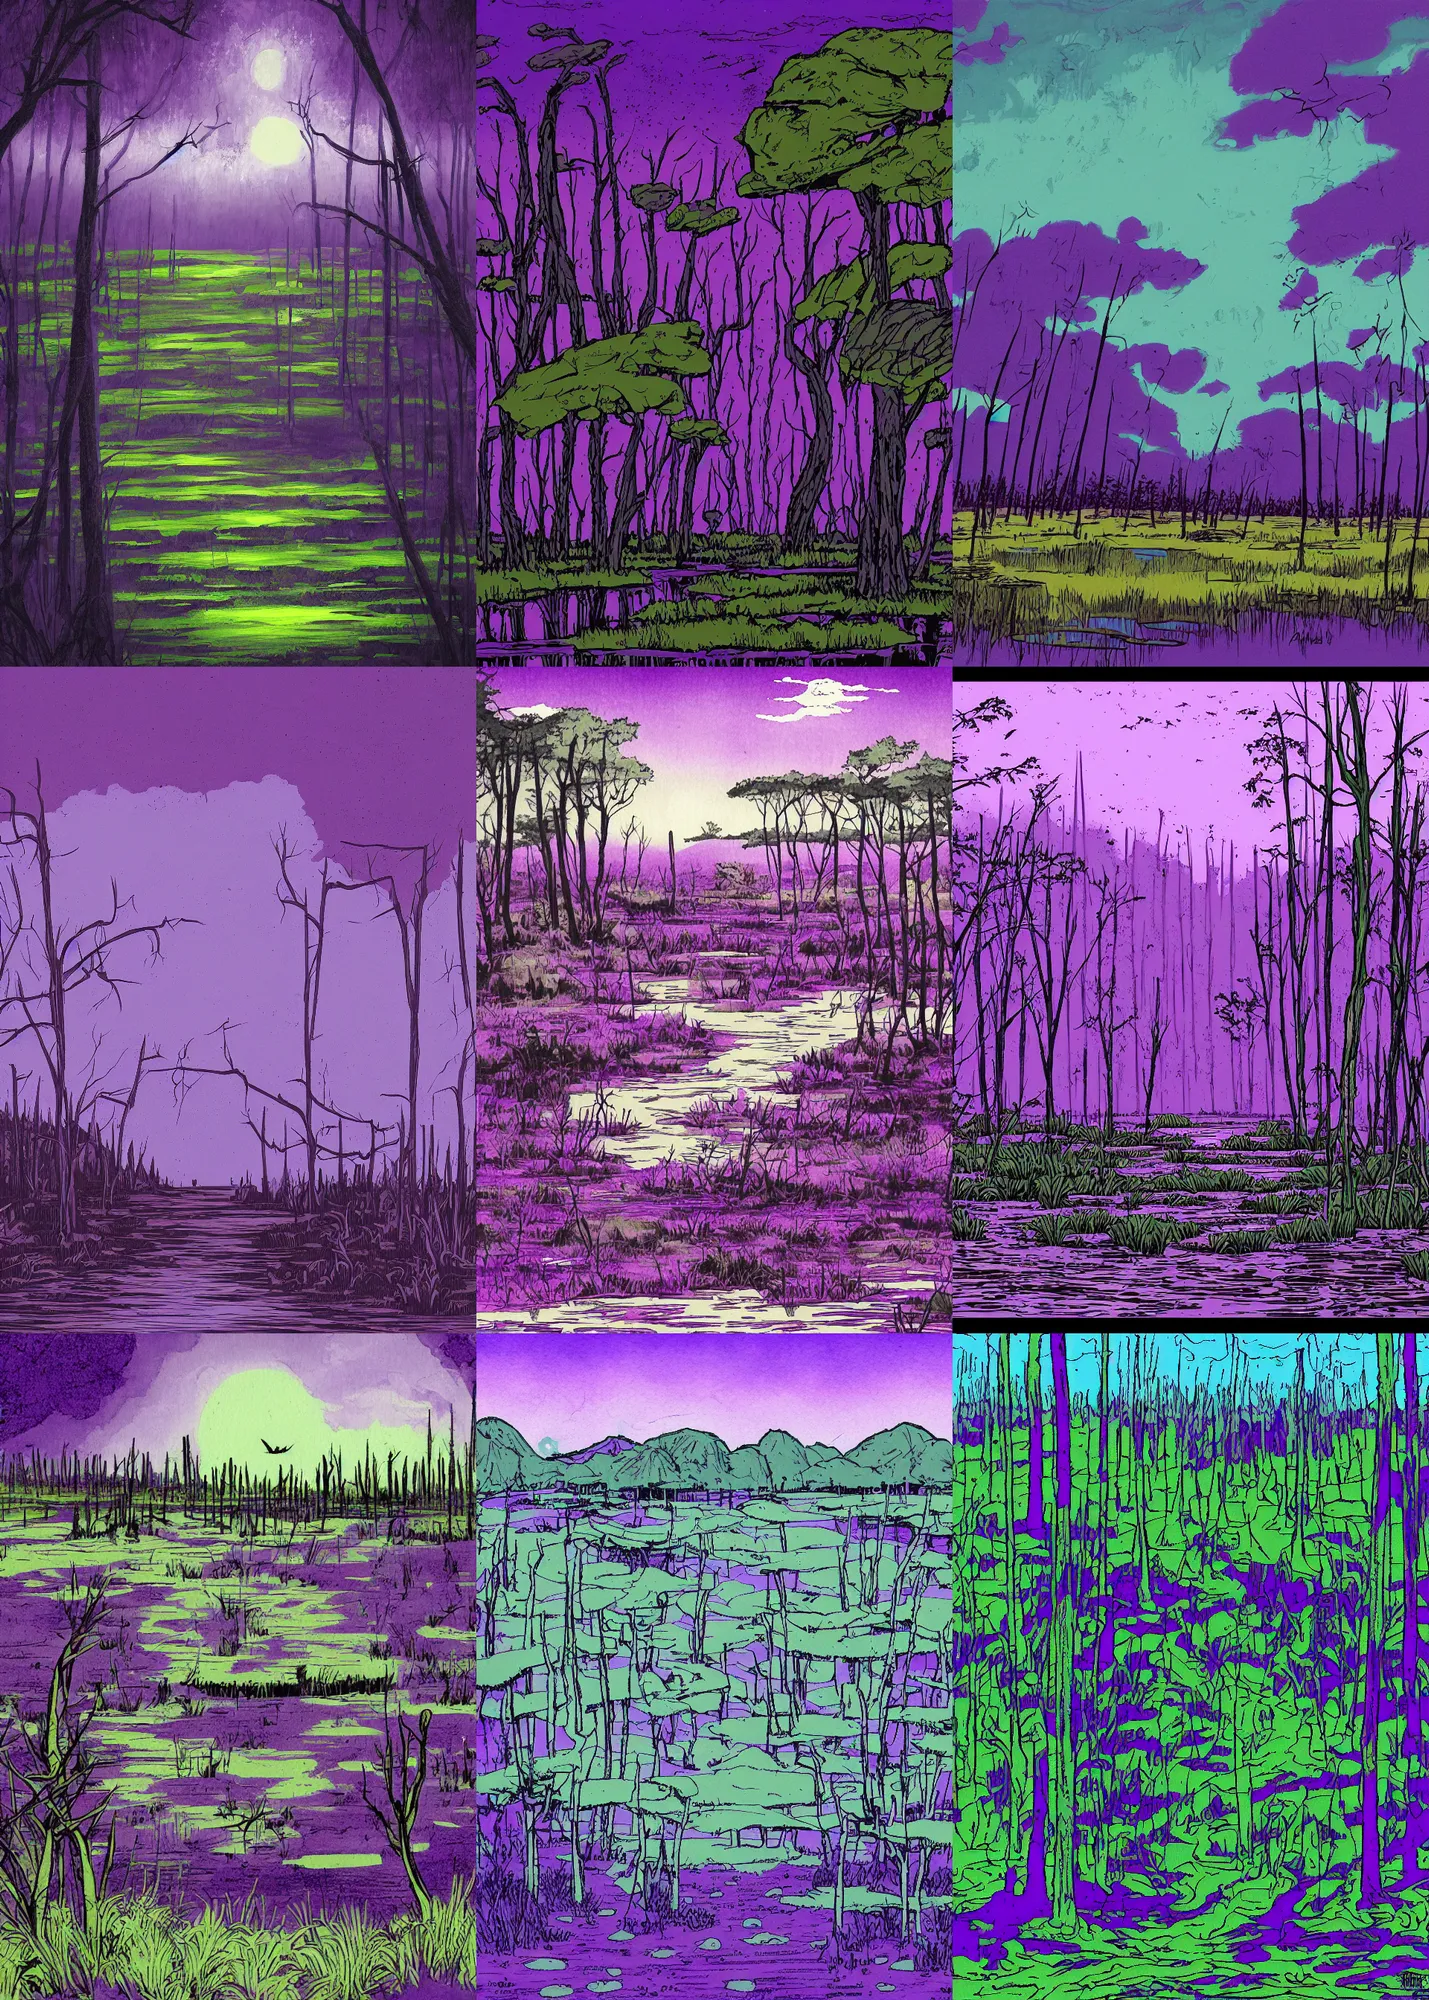 Prompt: violet swamp landscape, by tim doyle